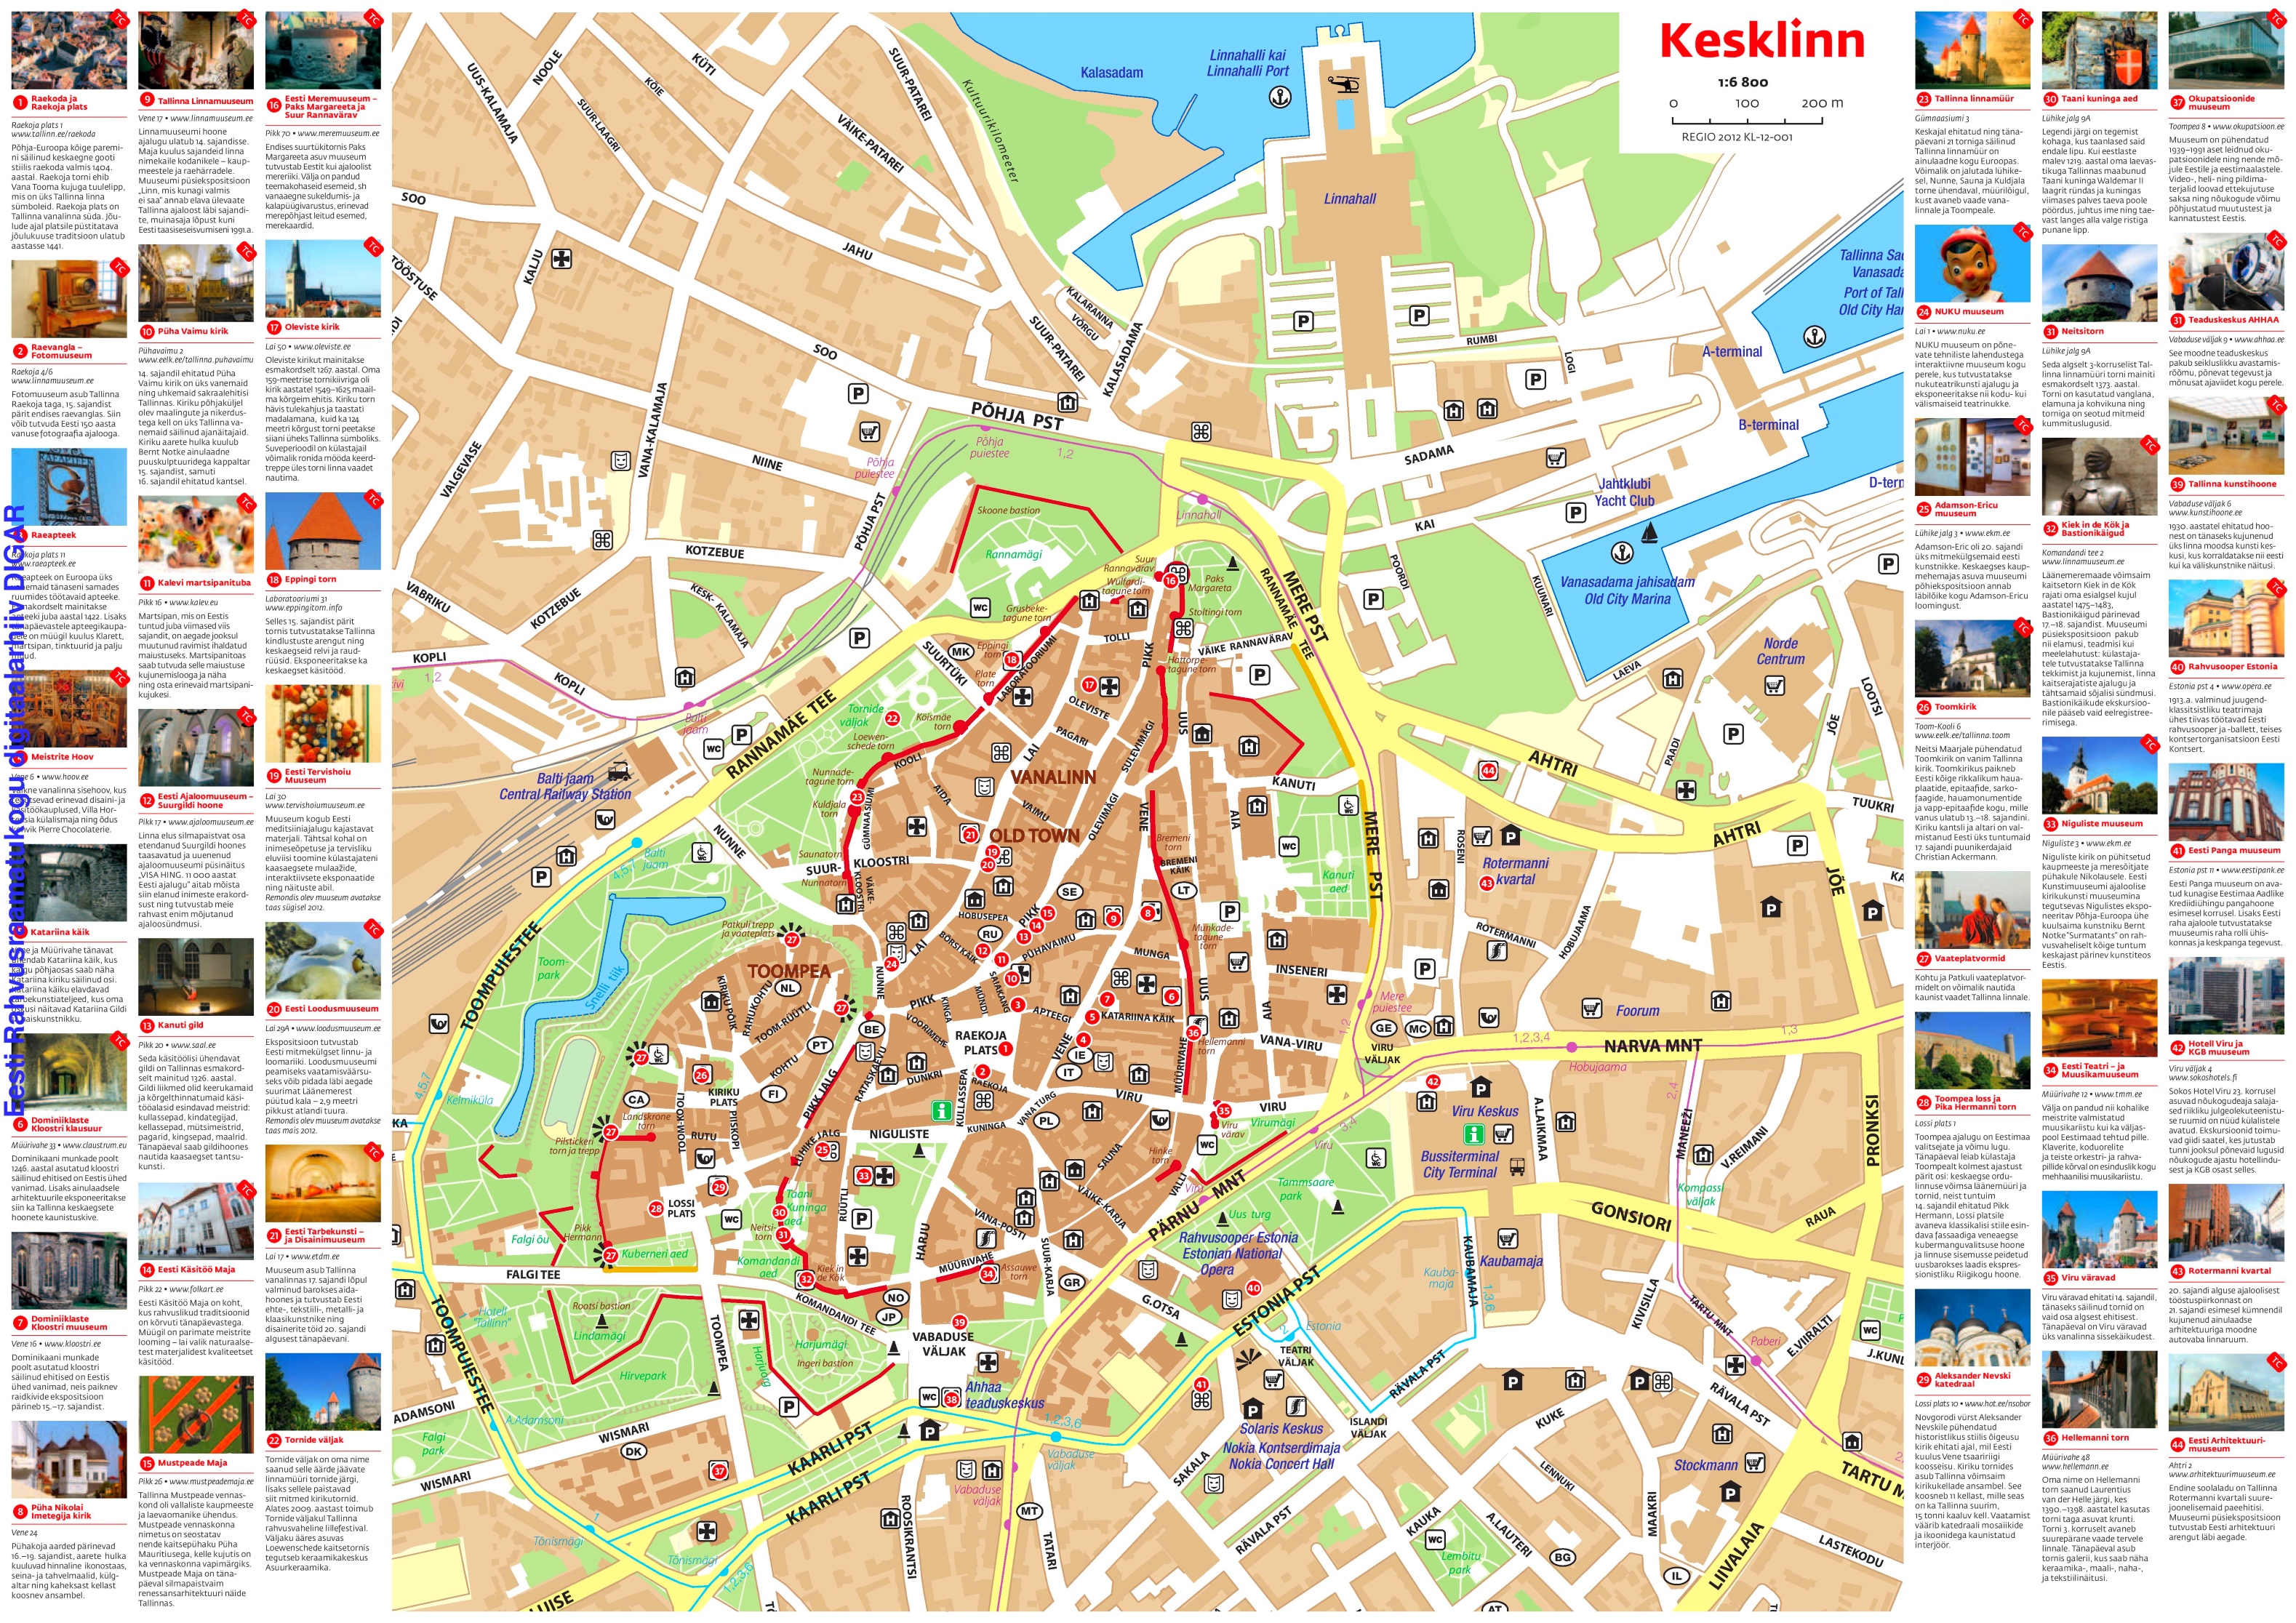 tallinn-sightseeing-map.jpg